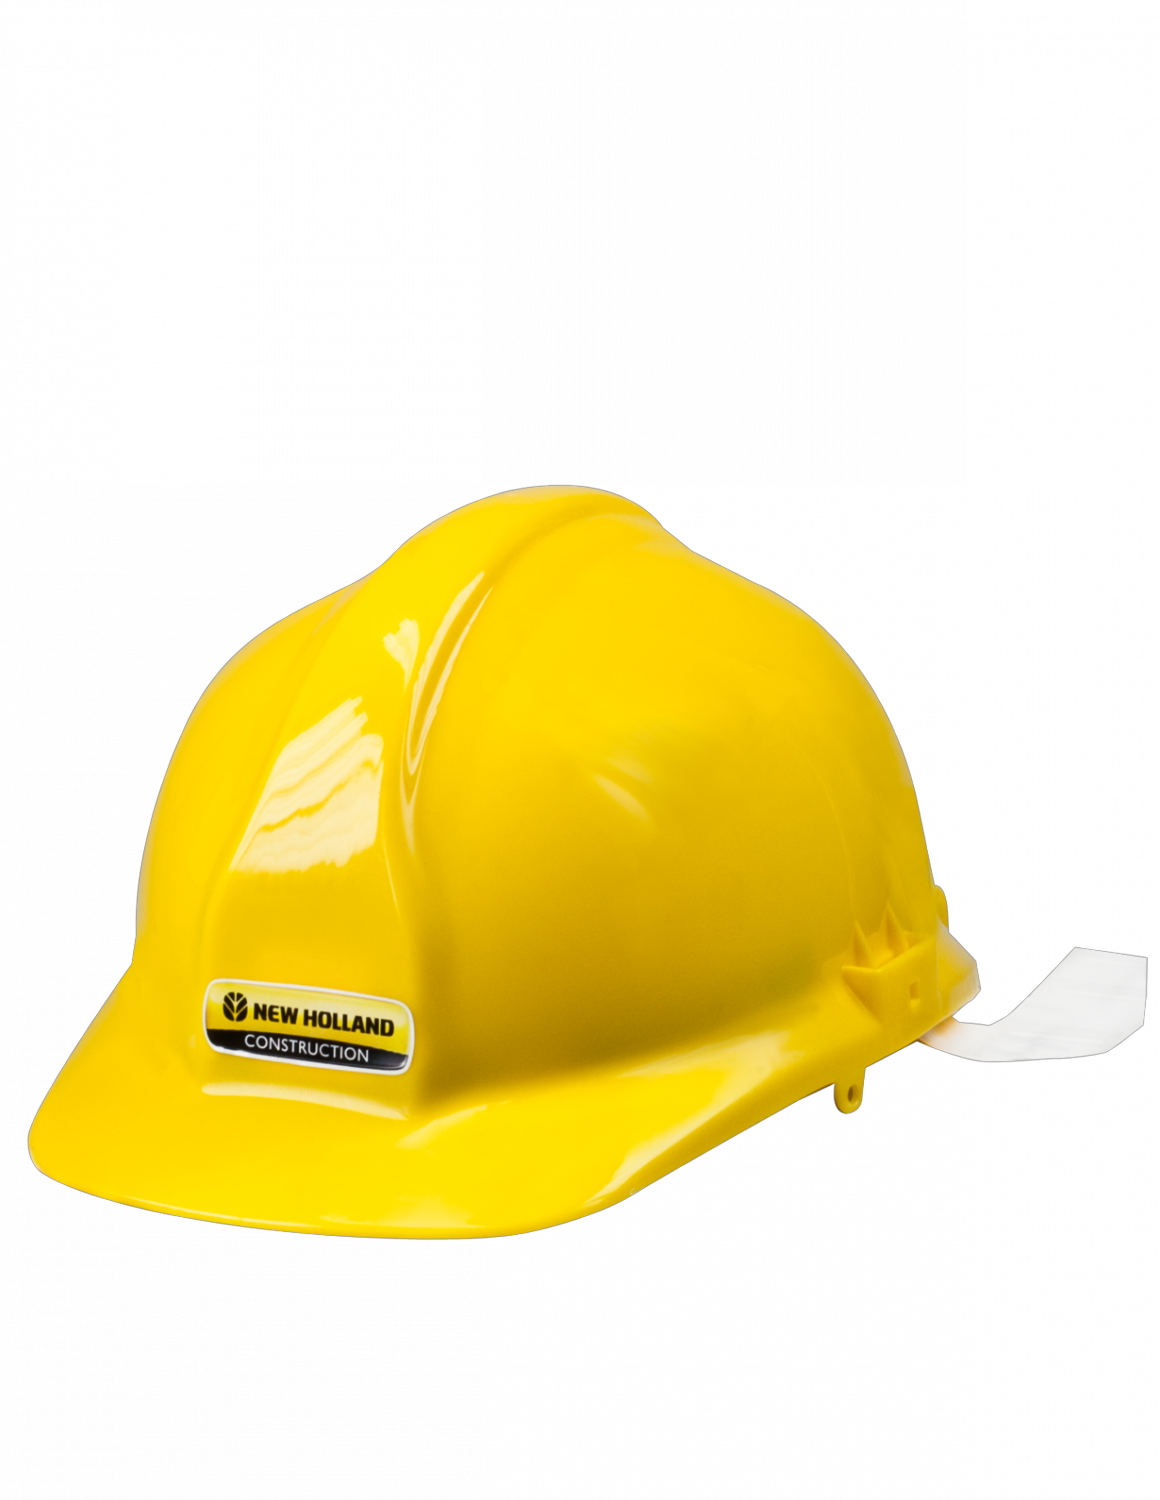 Safety Helmet Transparent Background - Security Helmet Png (1160x1500), Png Download